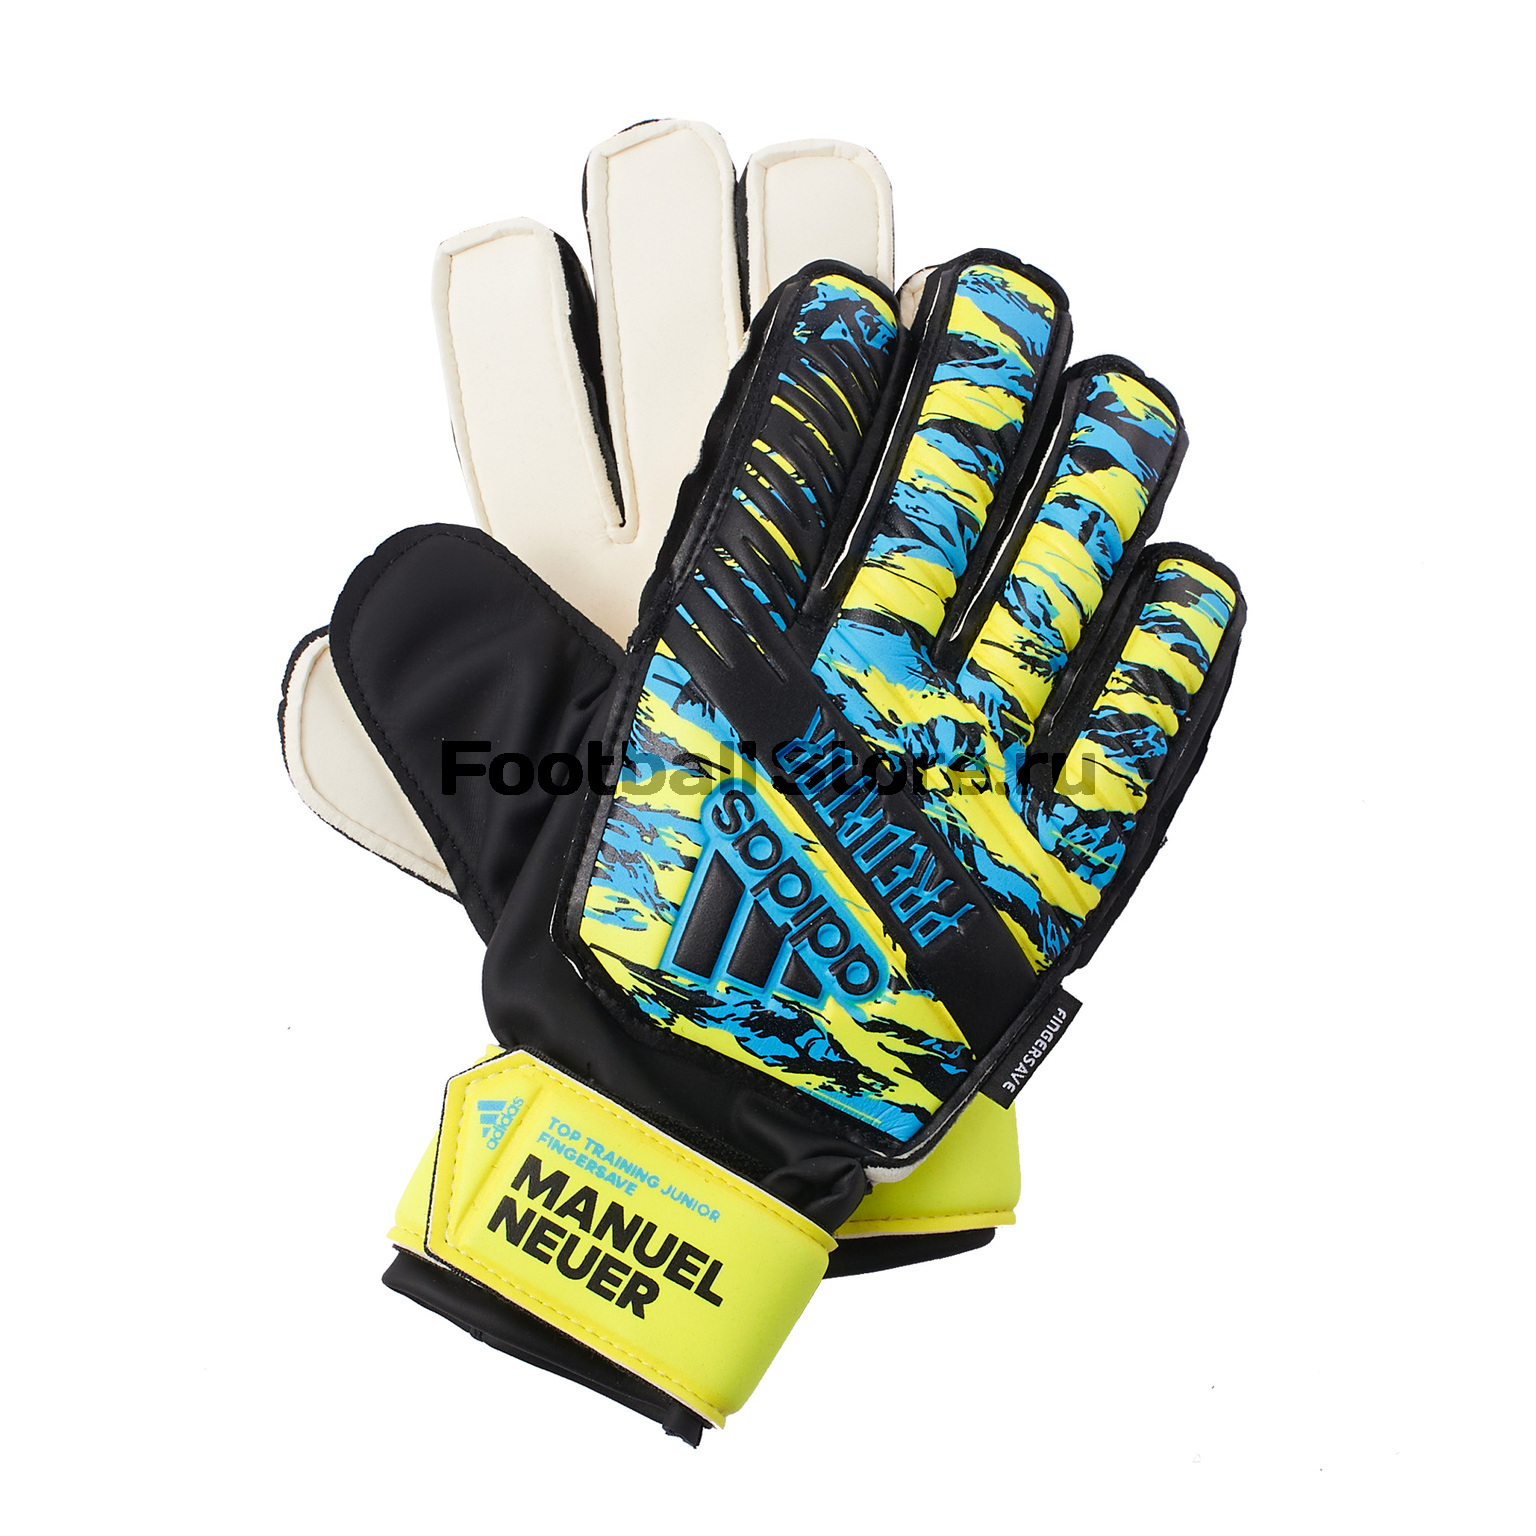 Перчатки вратарские детские Adidas Predator FS Manuel Neuer DY2625 